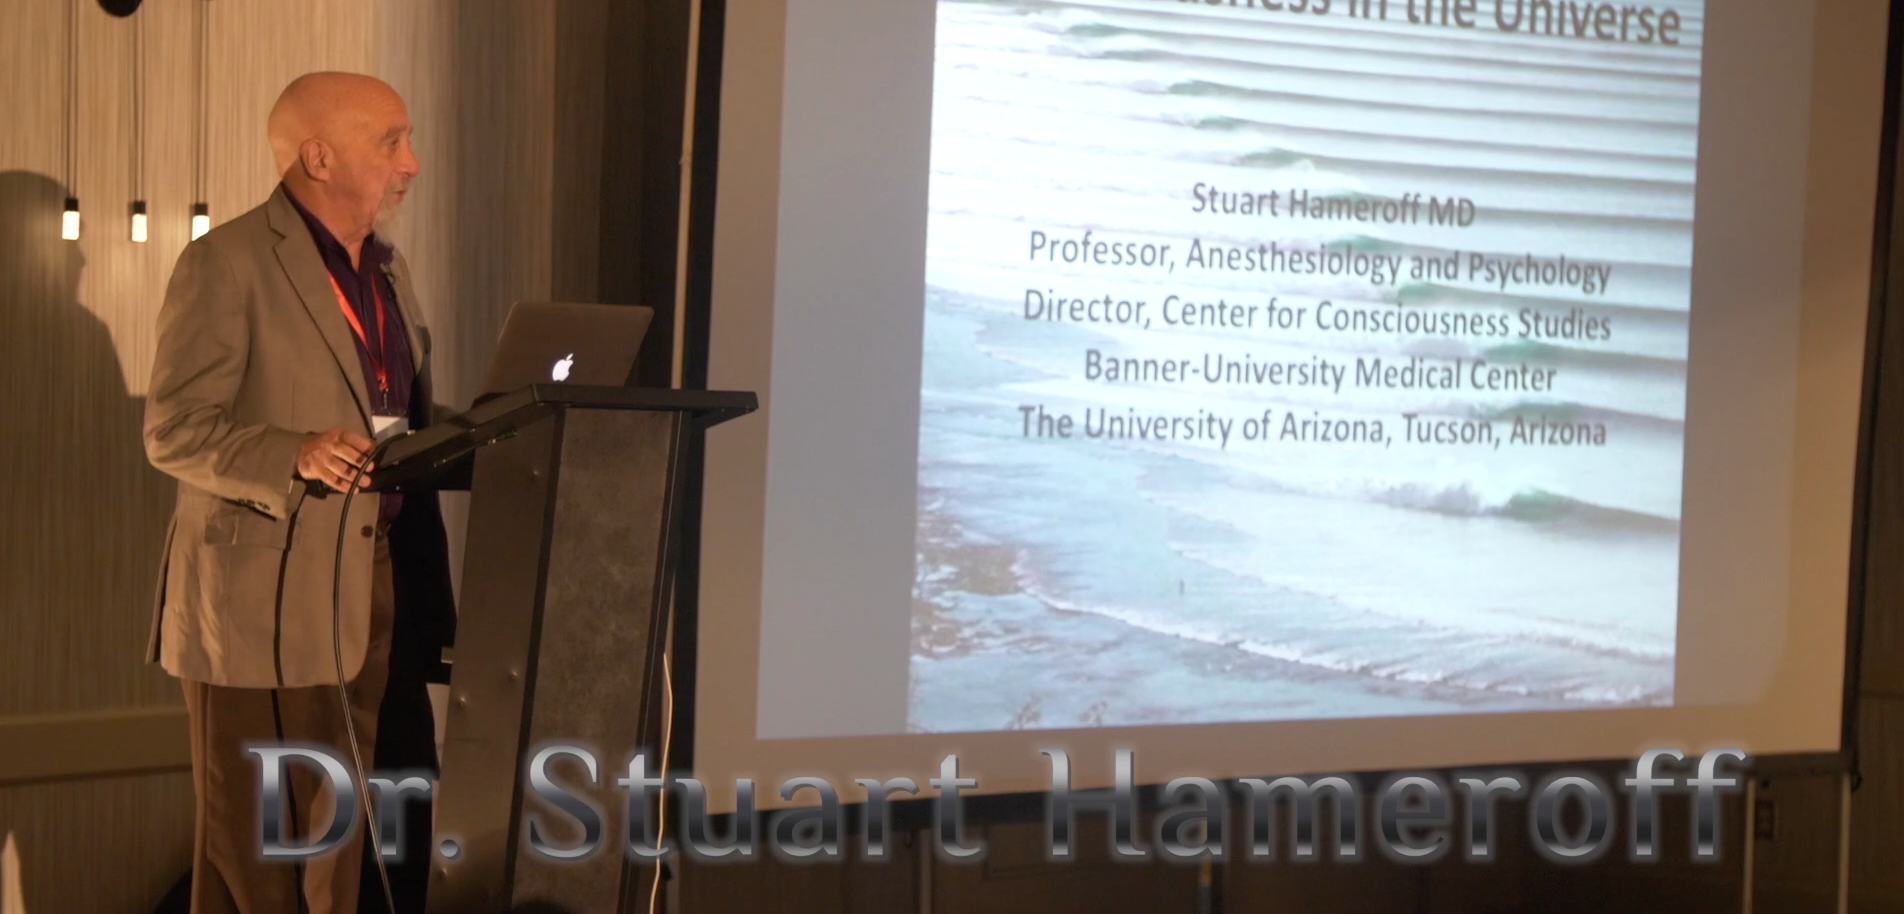 Dr. Stuart Hameroff